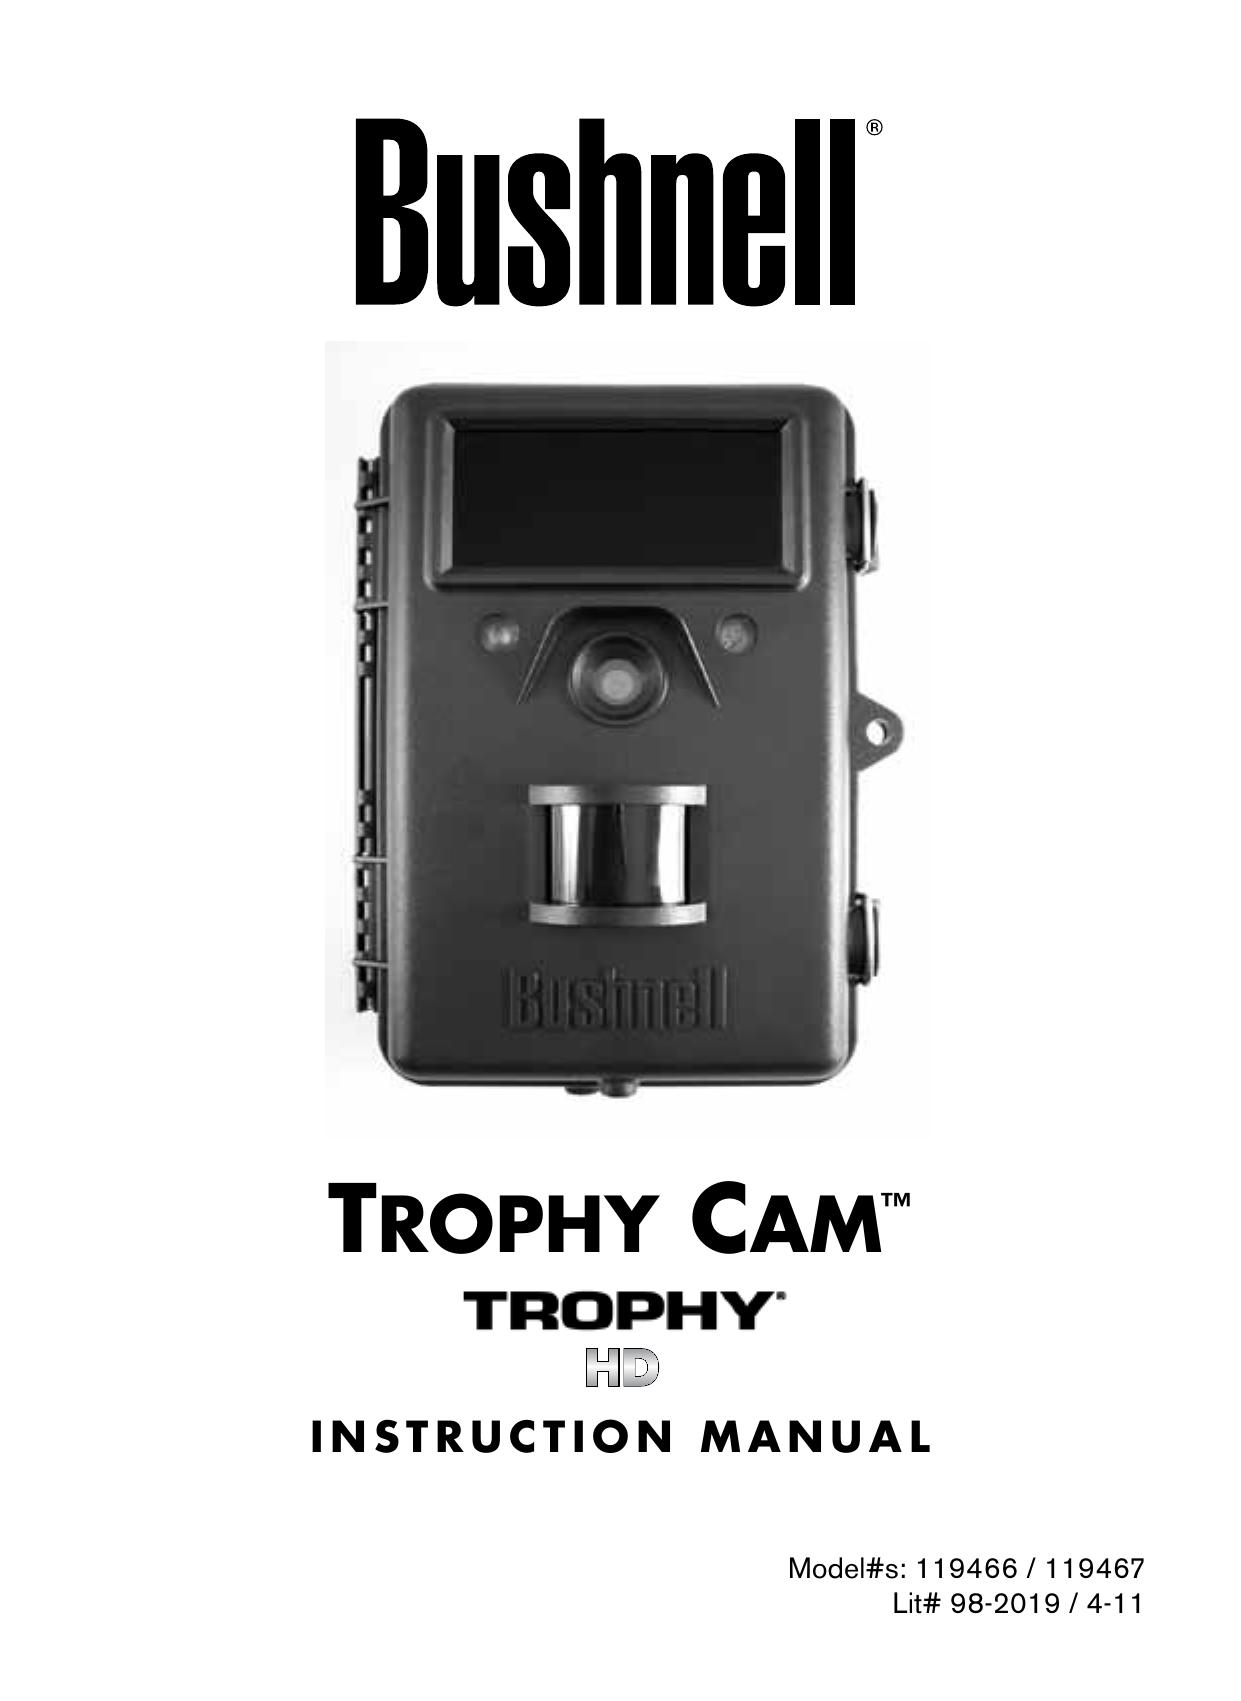 Bushnell 119467 Camcorder User Manual